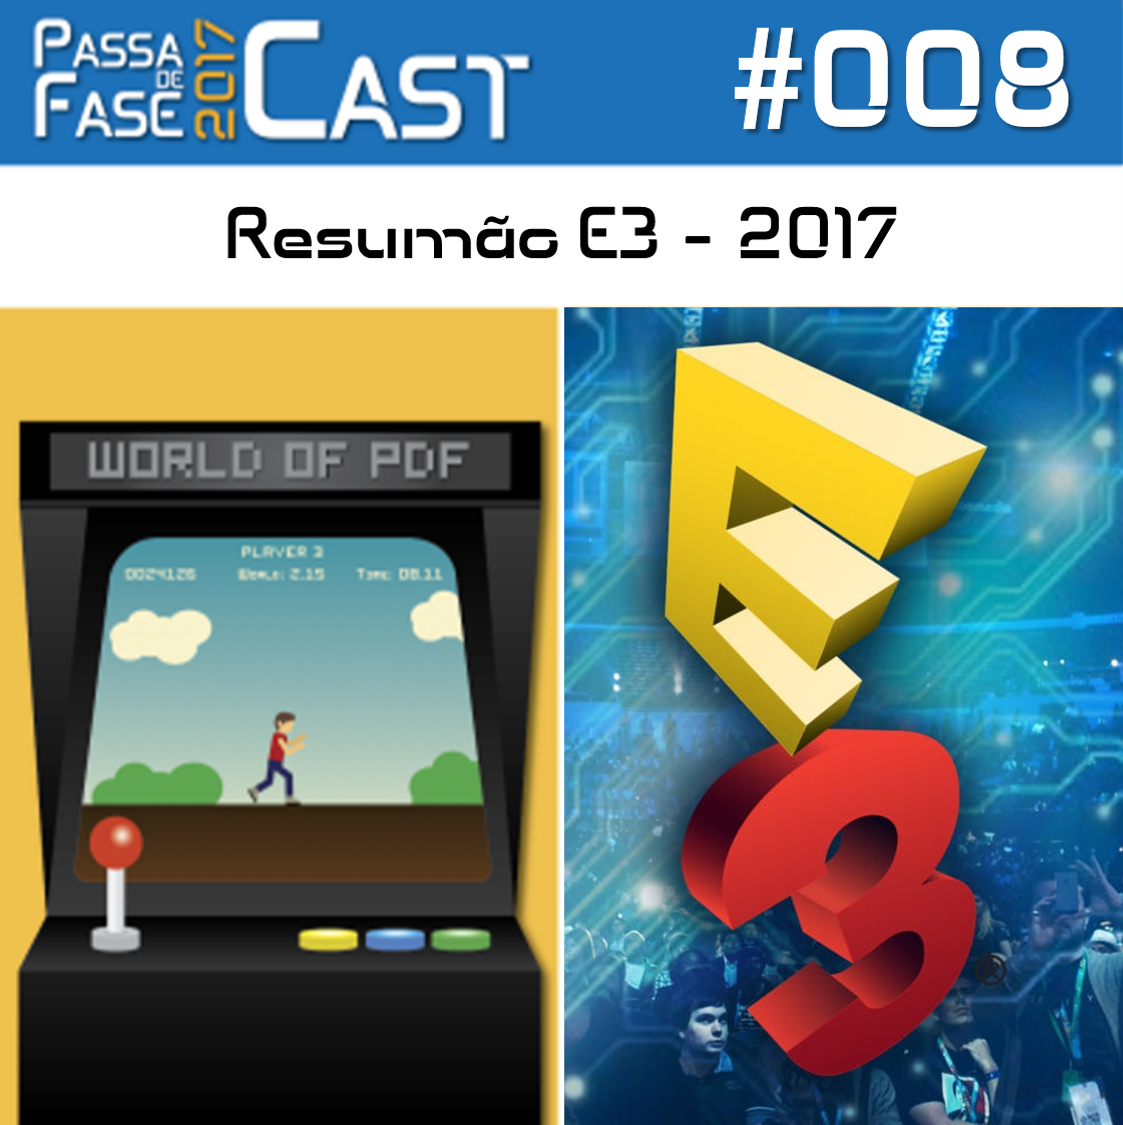 Passa de Fase Cast 2017 #008 | Resumo da E3 – 2017